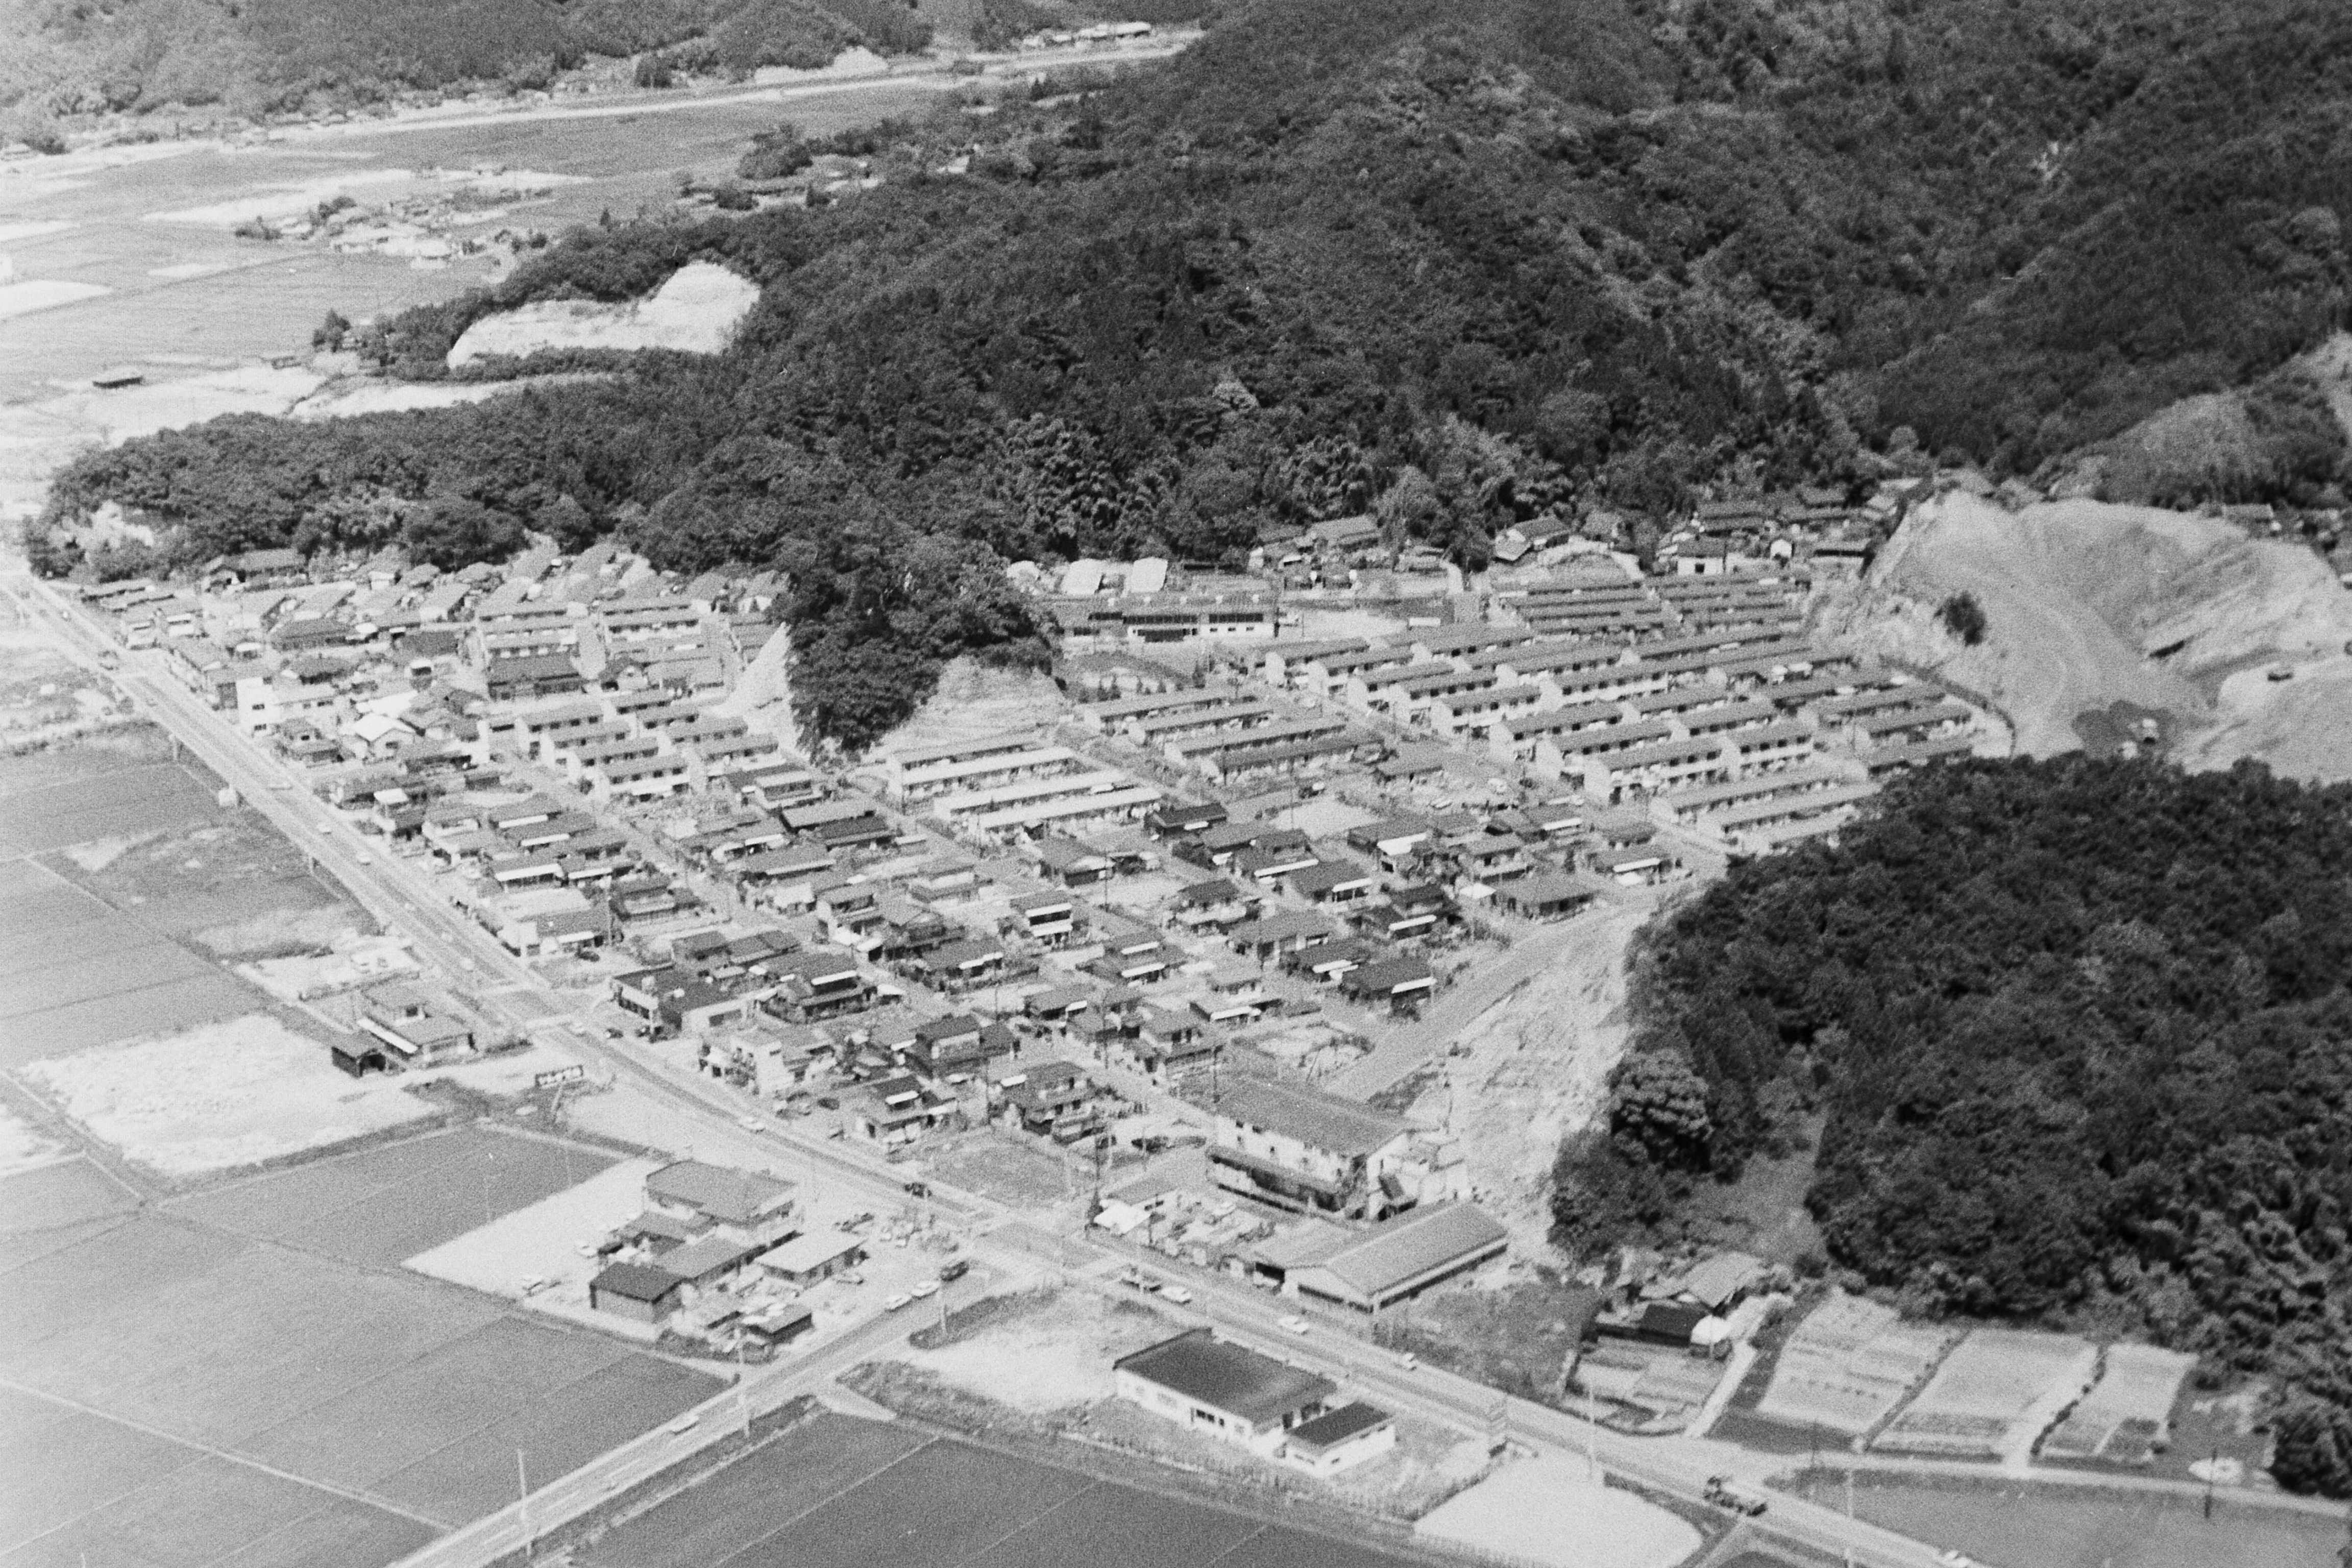 船戸団地を南西側上空から見る(昭和50年代初め、いわき市撮影)